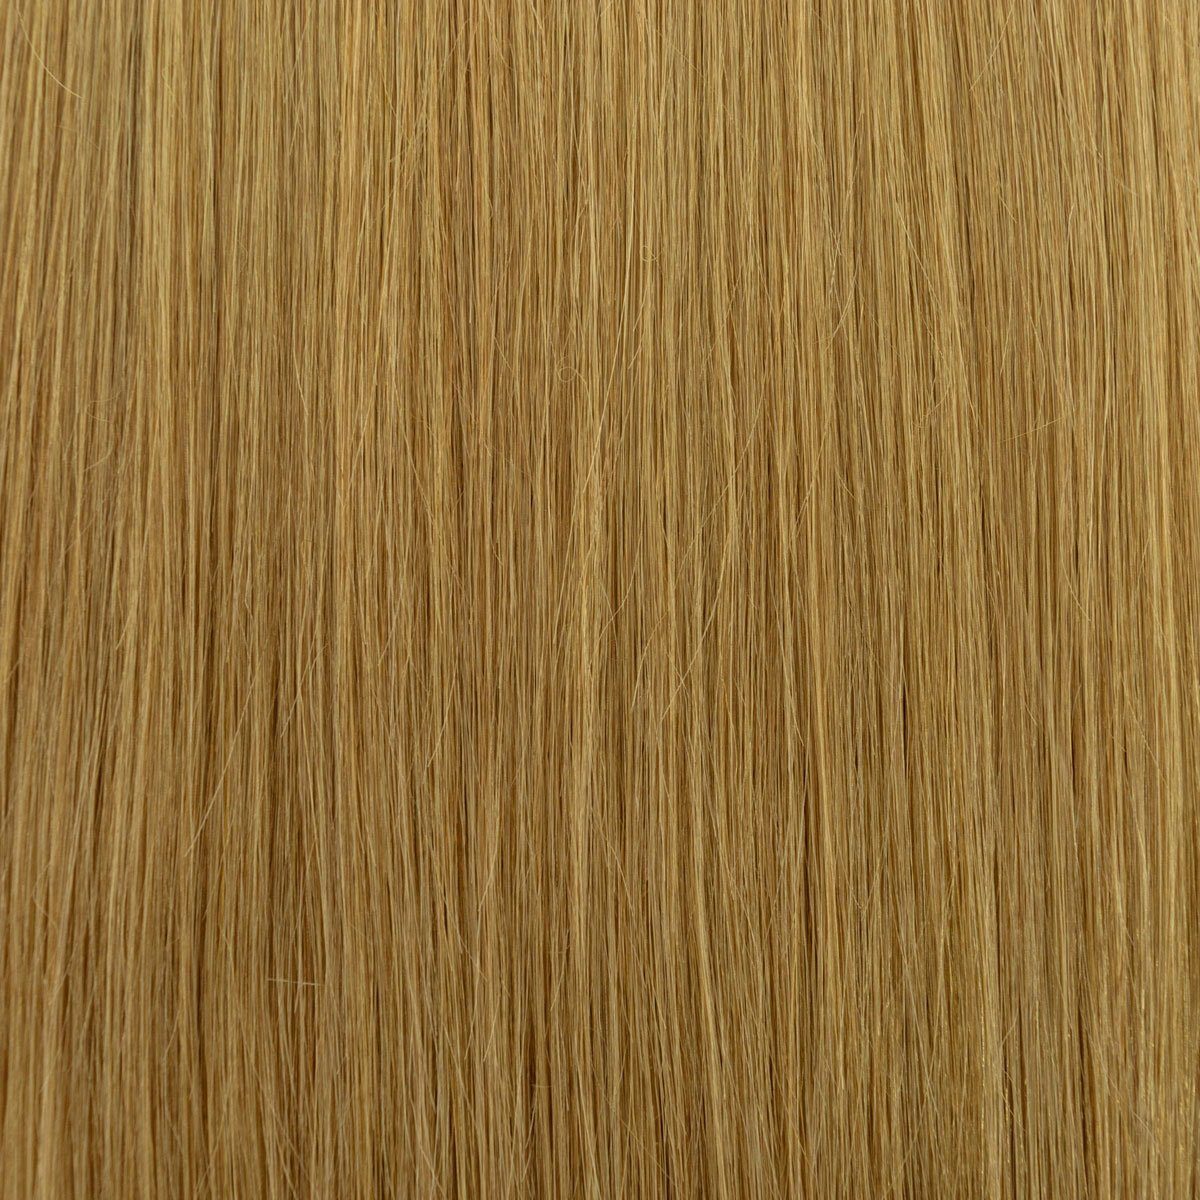 Global Extend Echthaar-Extension Haartresse #15 chai-blond | Haarverlängerungen